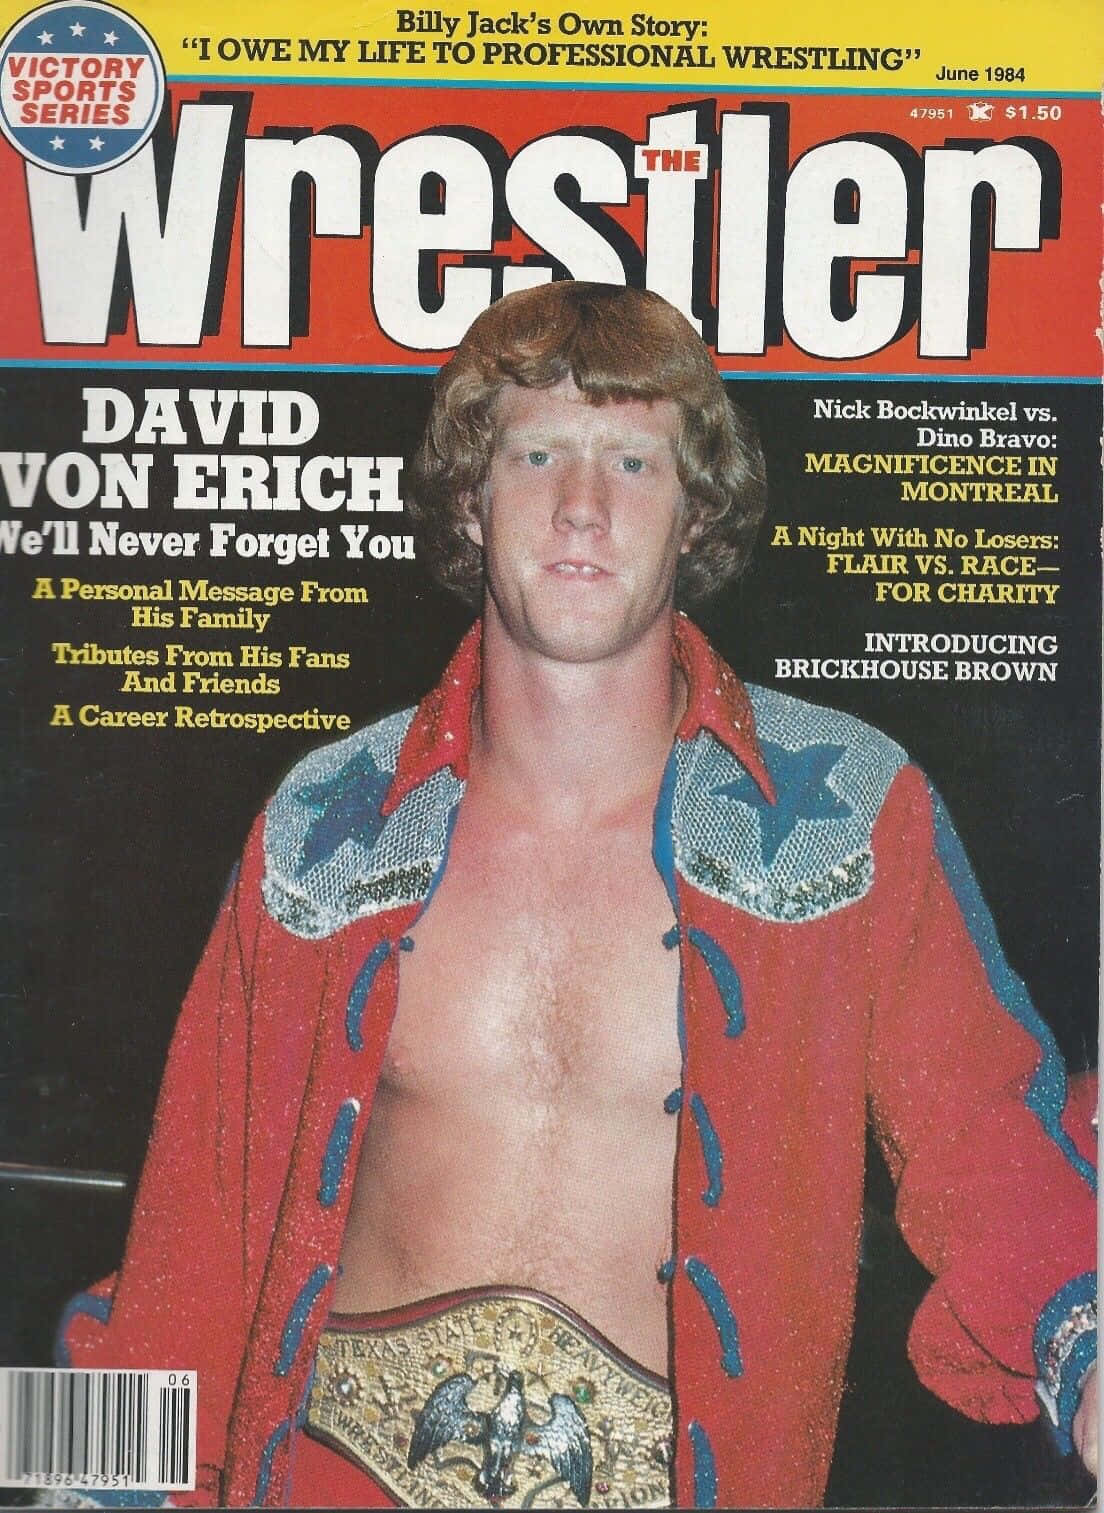 American Wrestler David Von Erich 1984 Magazine Cover Wallpaper